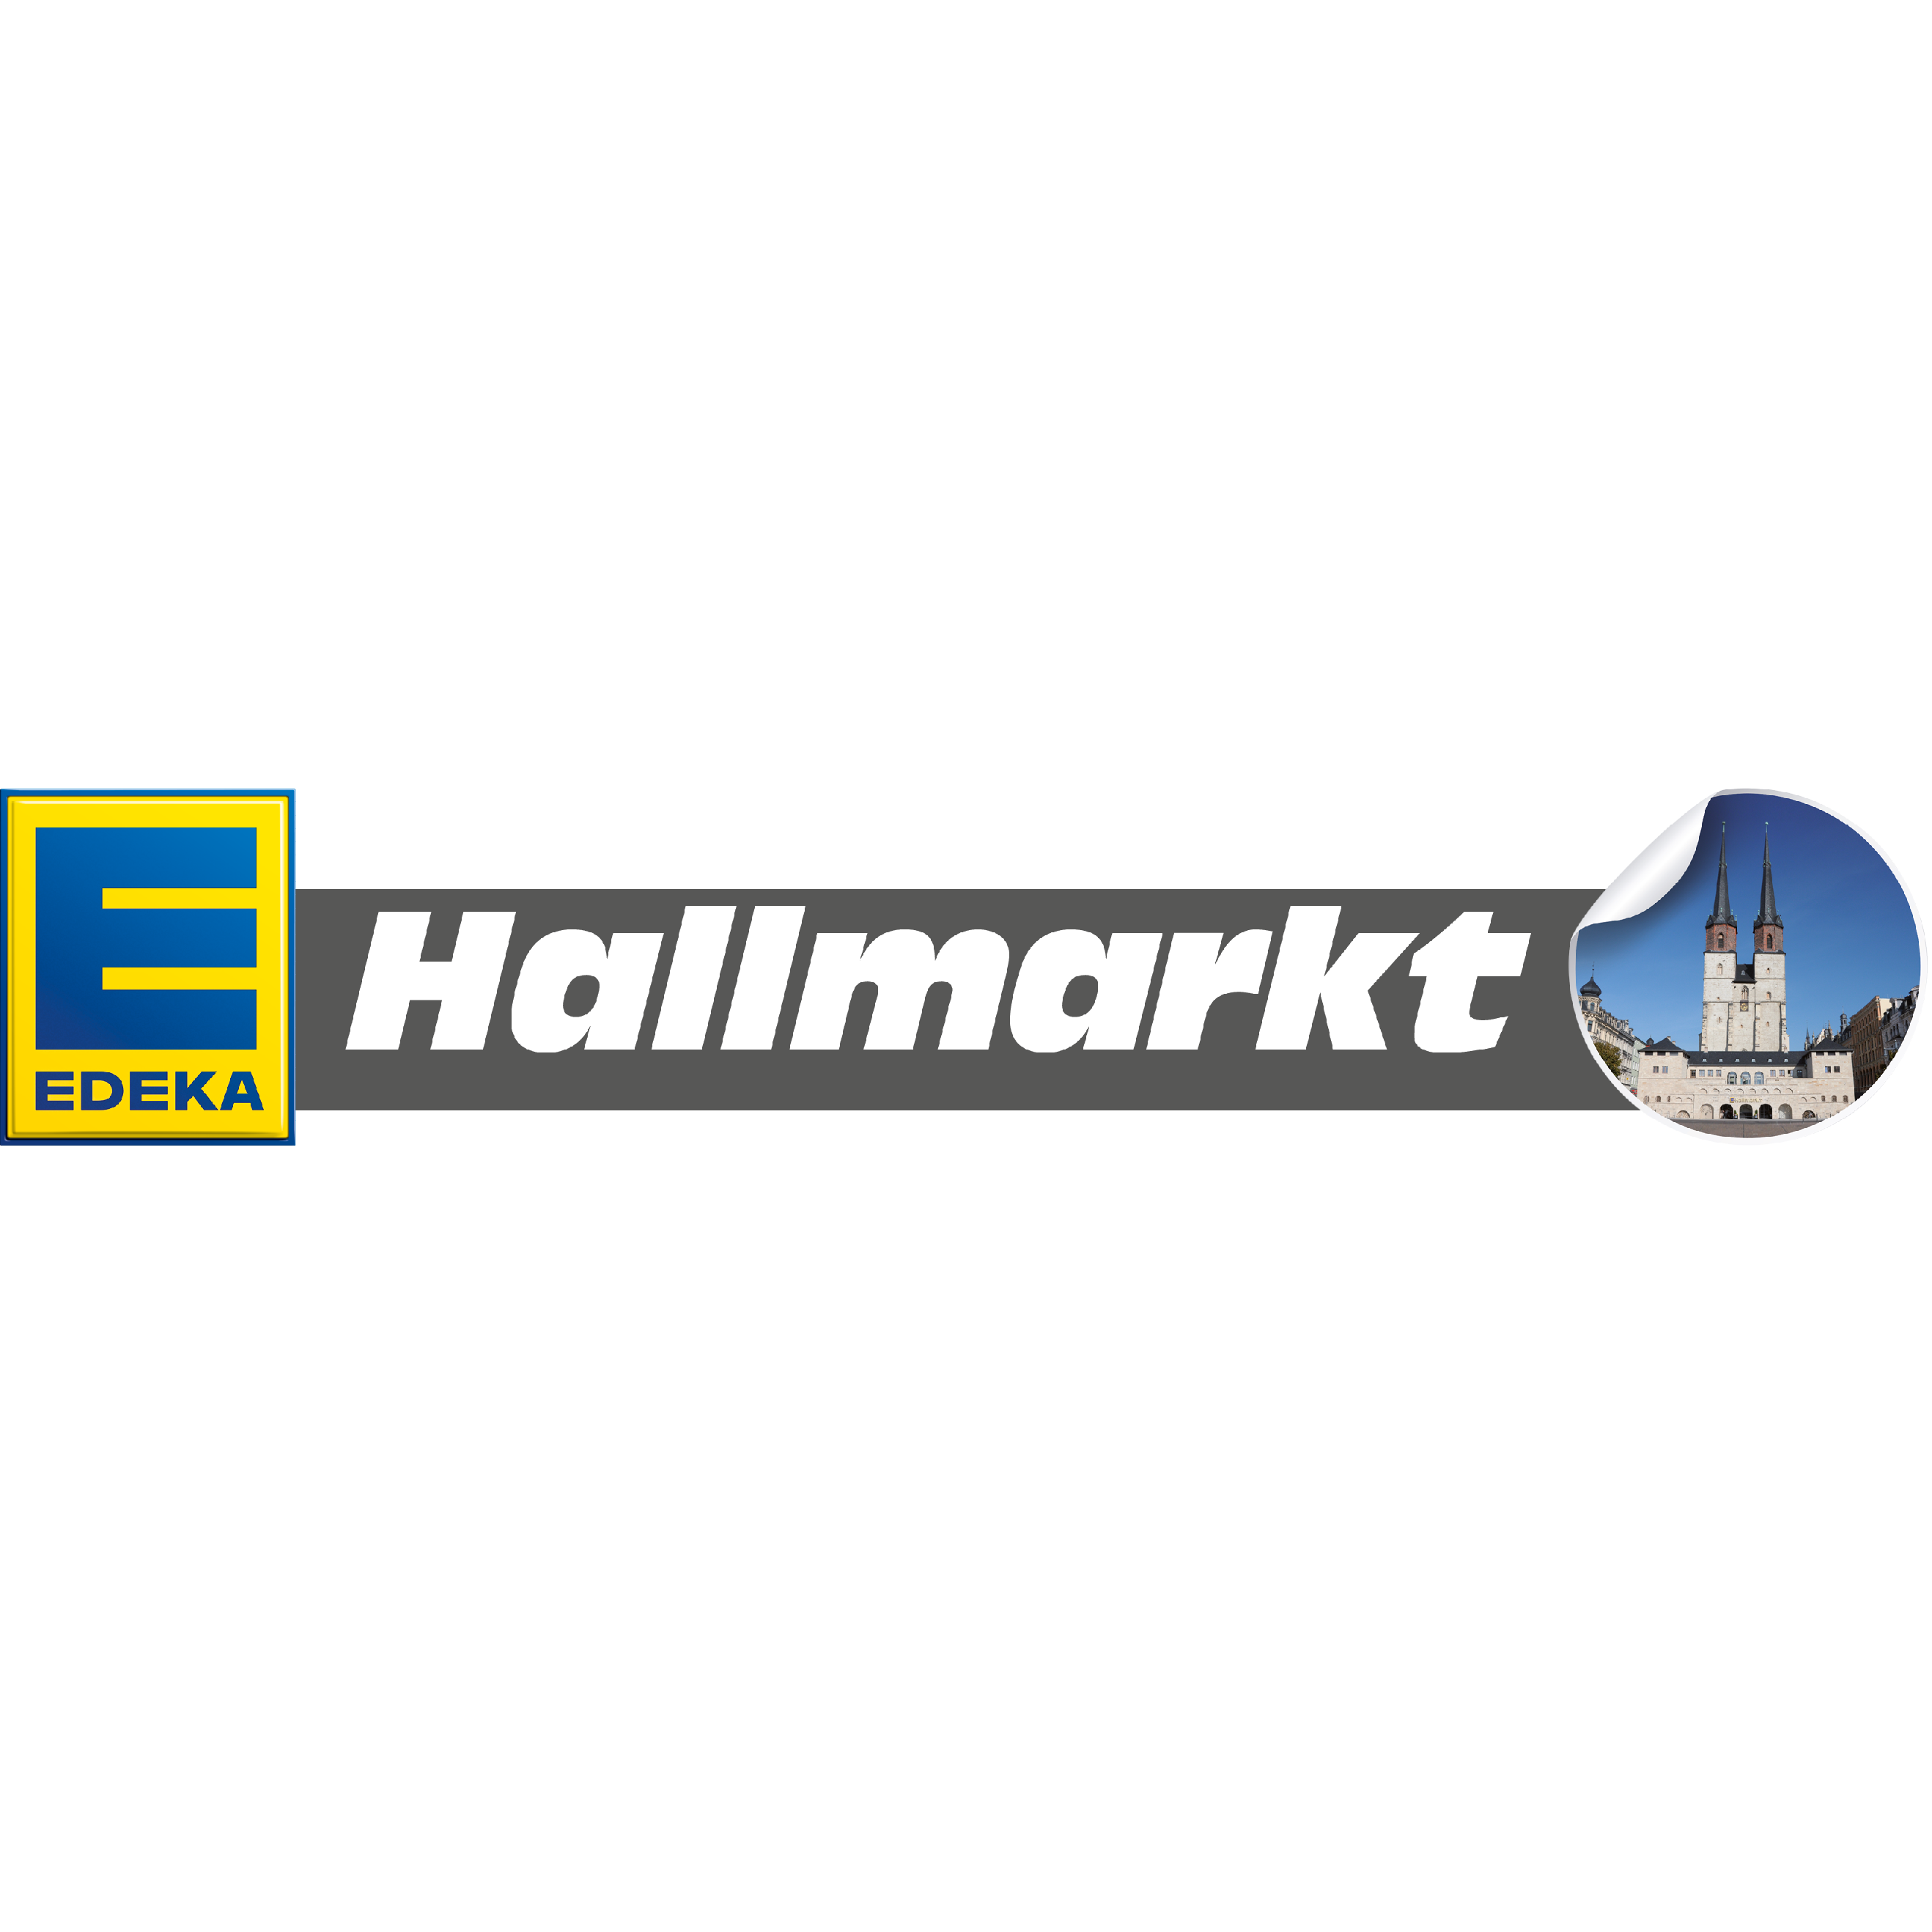 Logo Edeka Hallmarkt